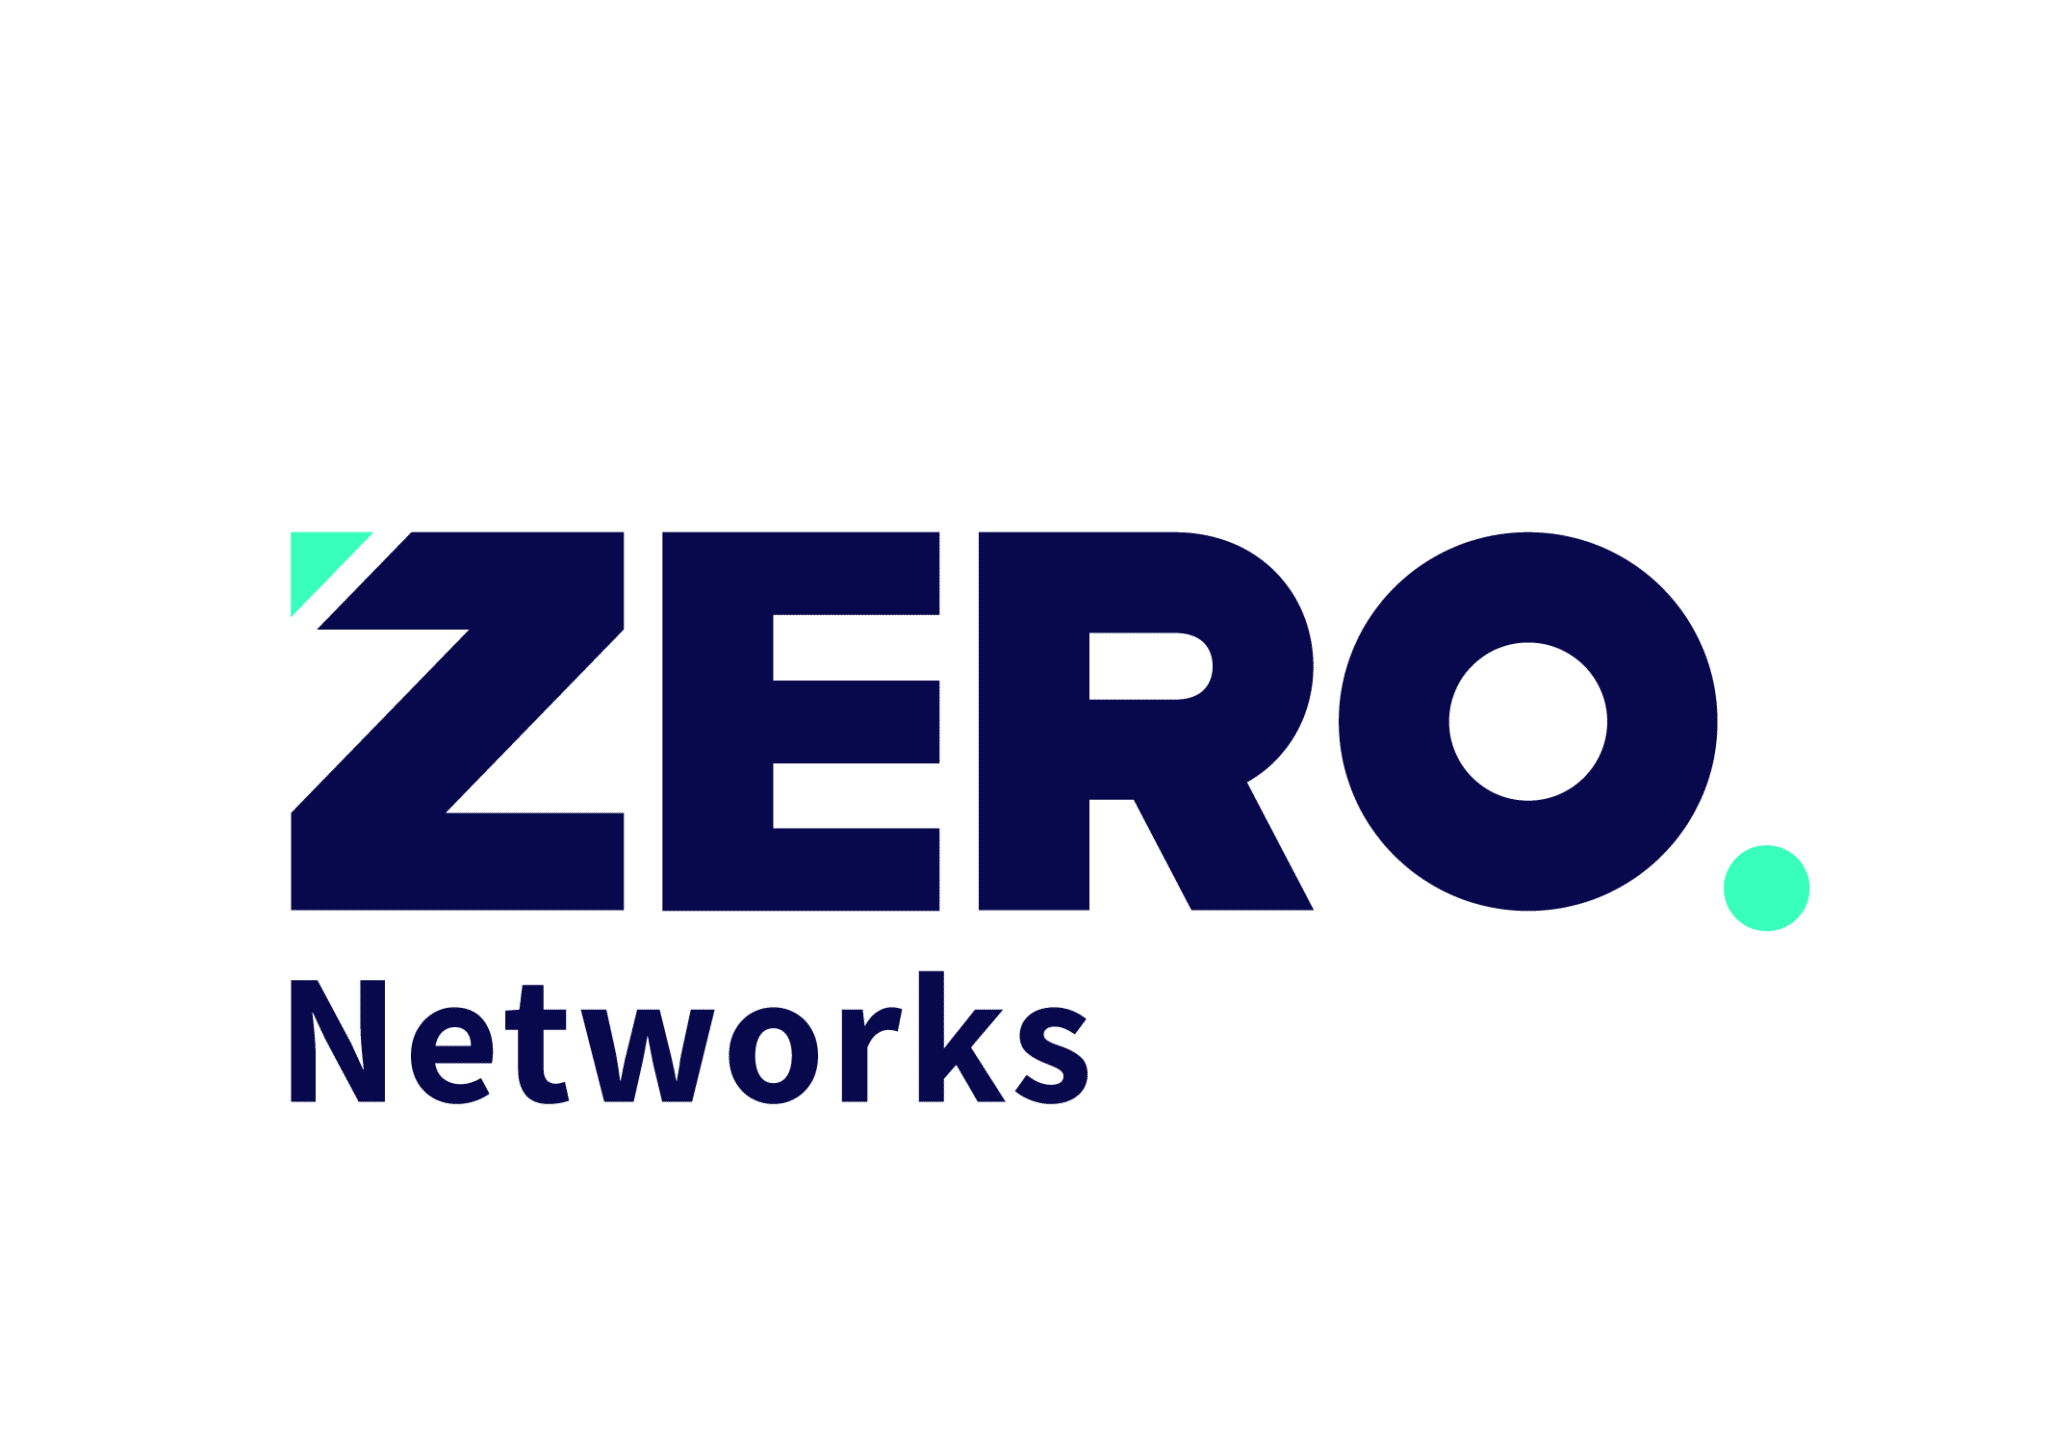 ZERO network